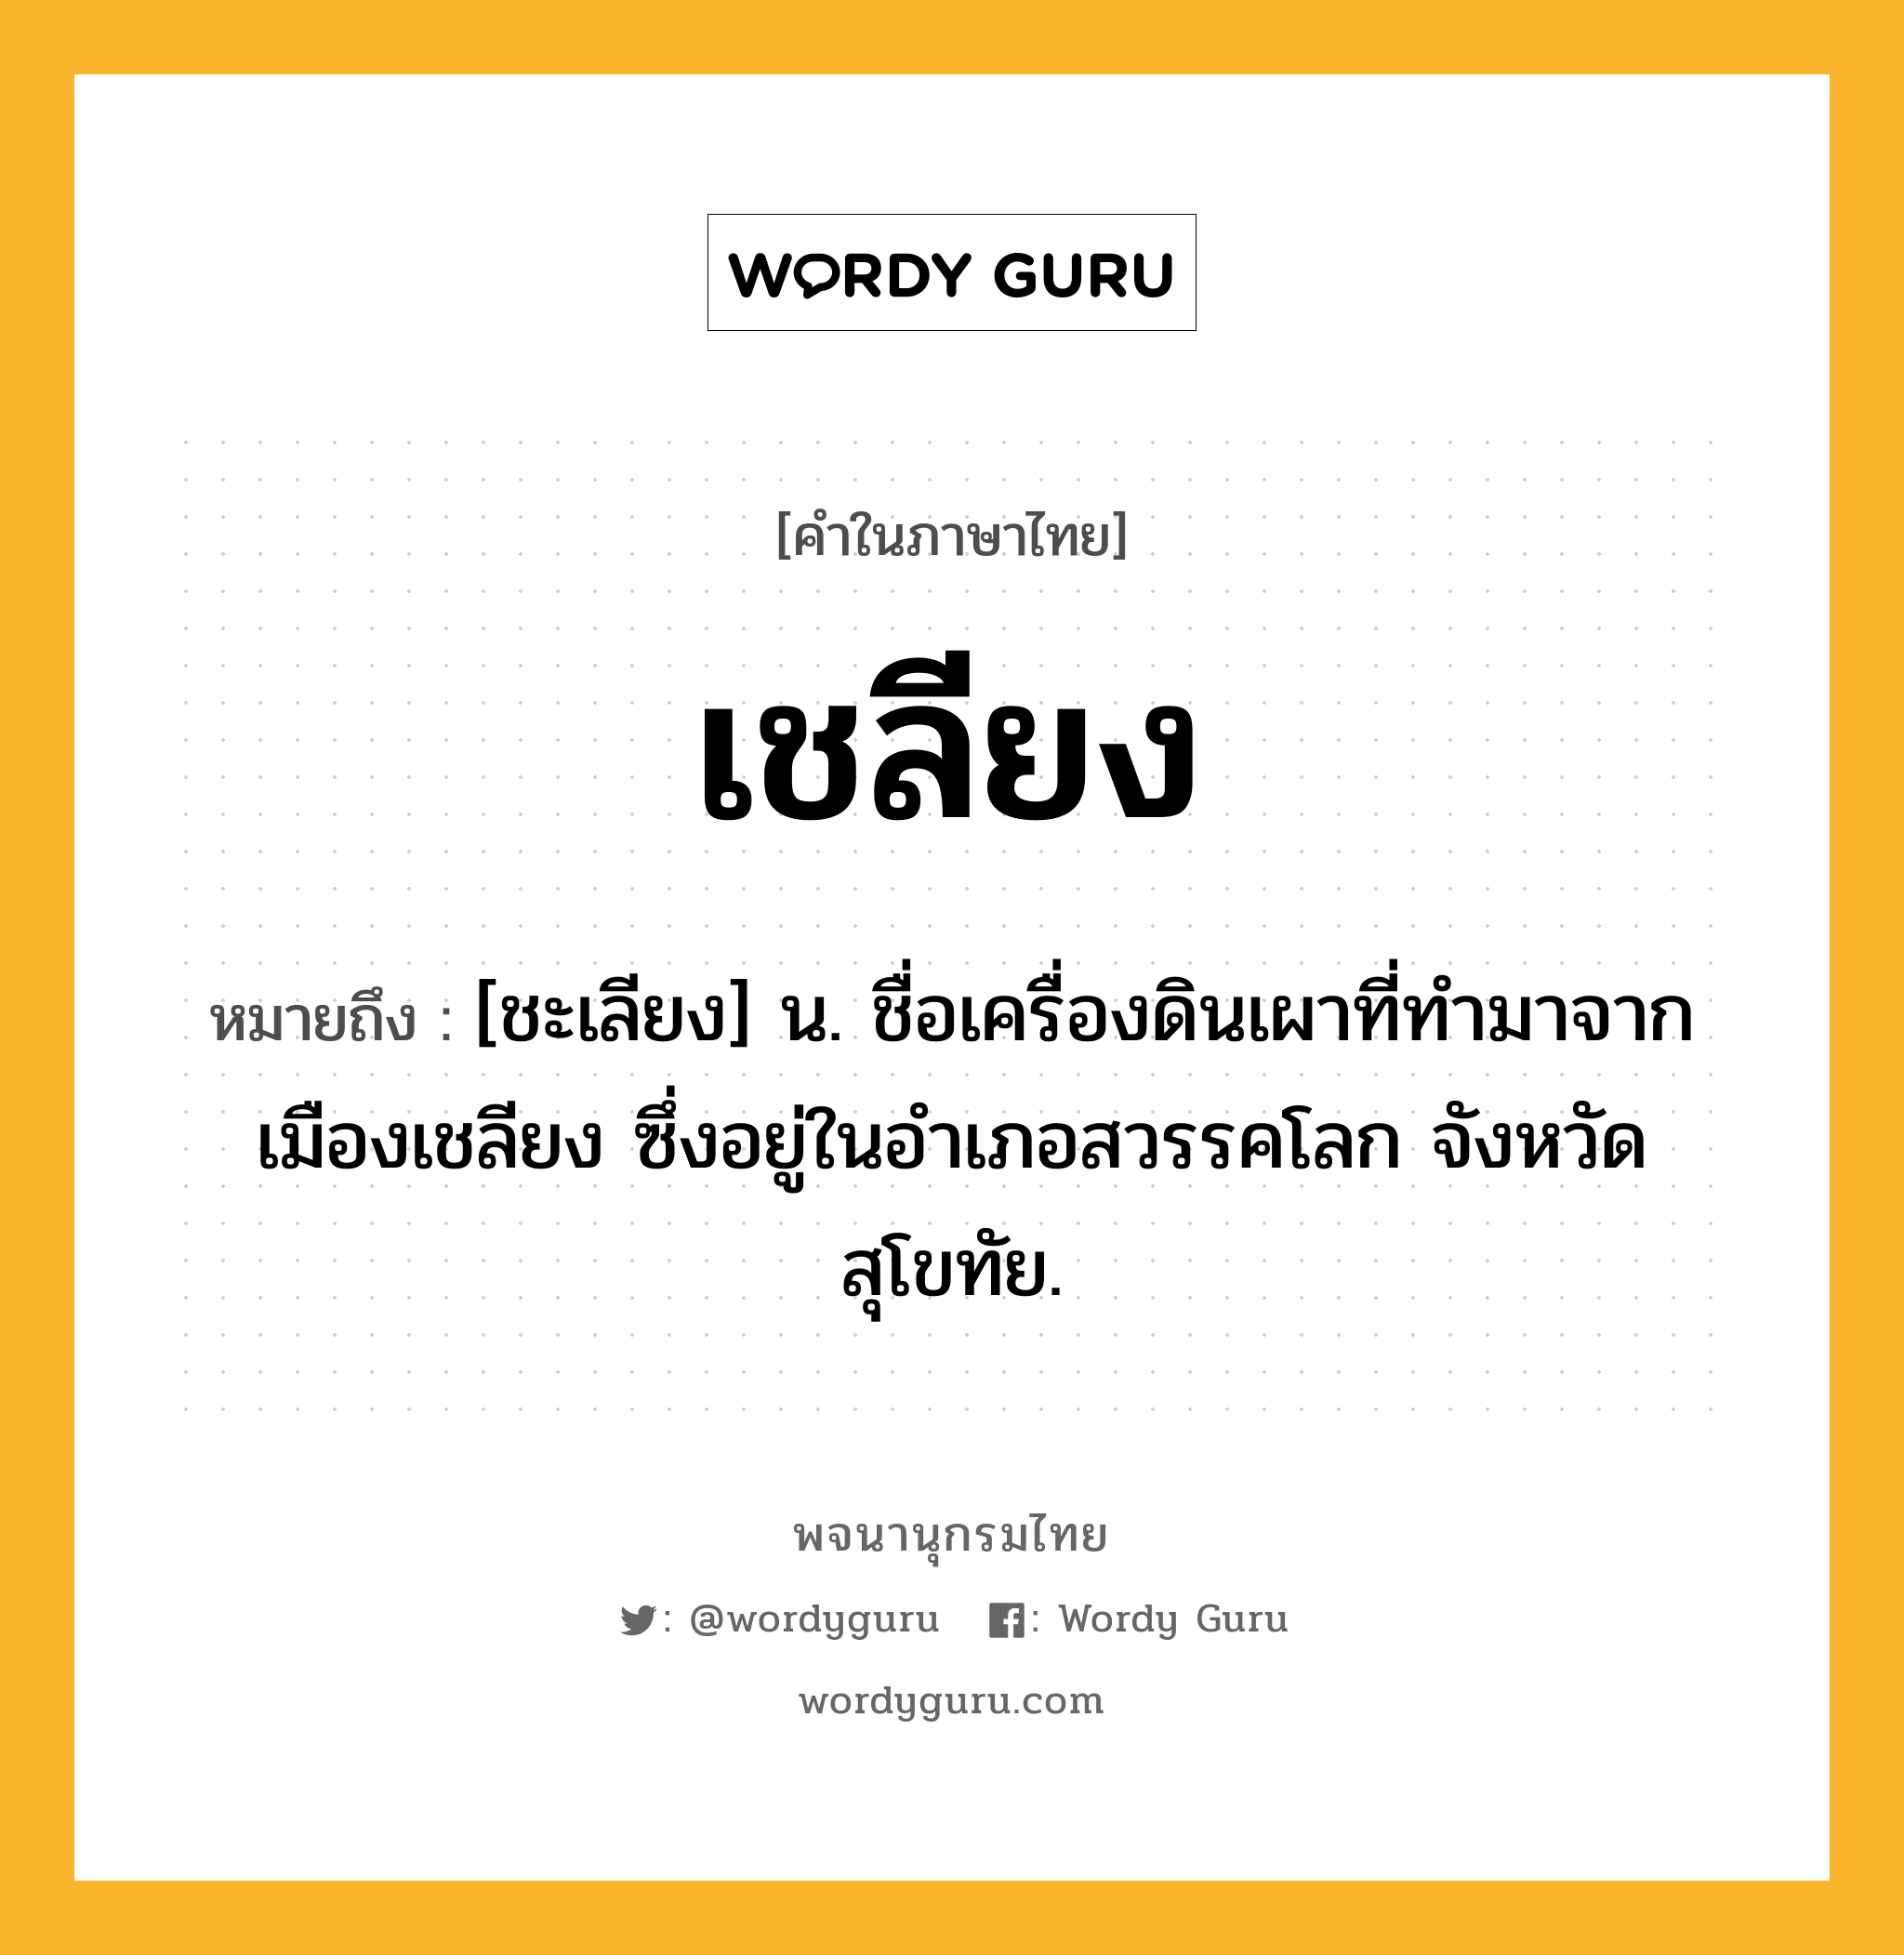 เชลียง ความหมาย หมายถึงอะไร?, คำในภาษาไทย เชลียง หมายถึง [ชะเลียง] น. ชื่อเครื่องดินเผาที่ทํามาจากเมืองเชลียง ซึ่งอยู่ในอําเภอสวรรคโลก จังหวัดสุโขทัย.